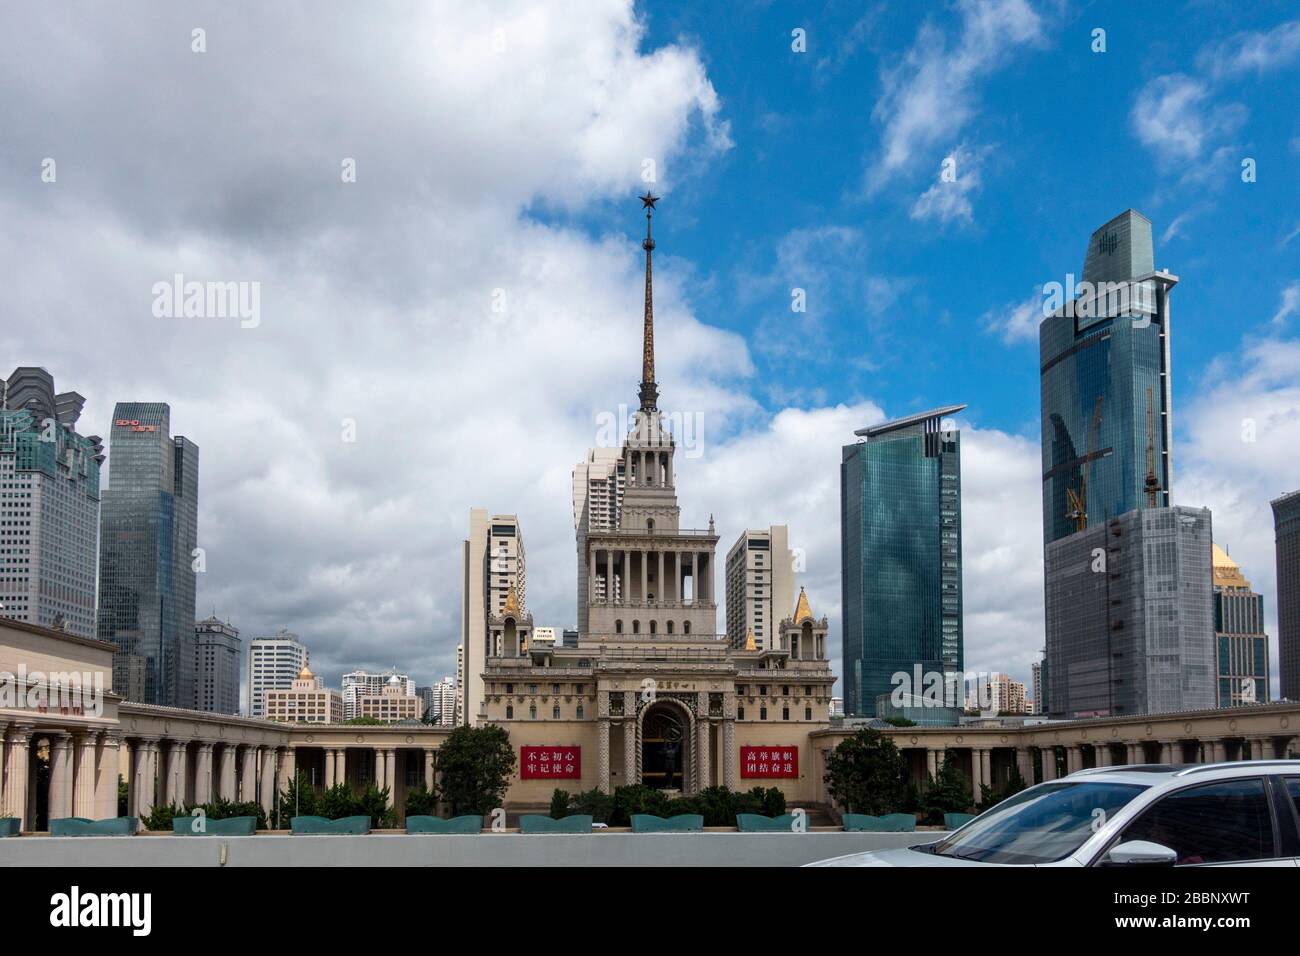 Le centre d'exposition de Shanghai, ancien bâtiment de l'amitié sino-soviétique, Shanghai, Chine Banque D'Images